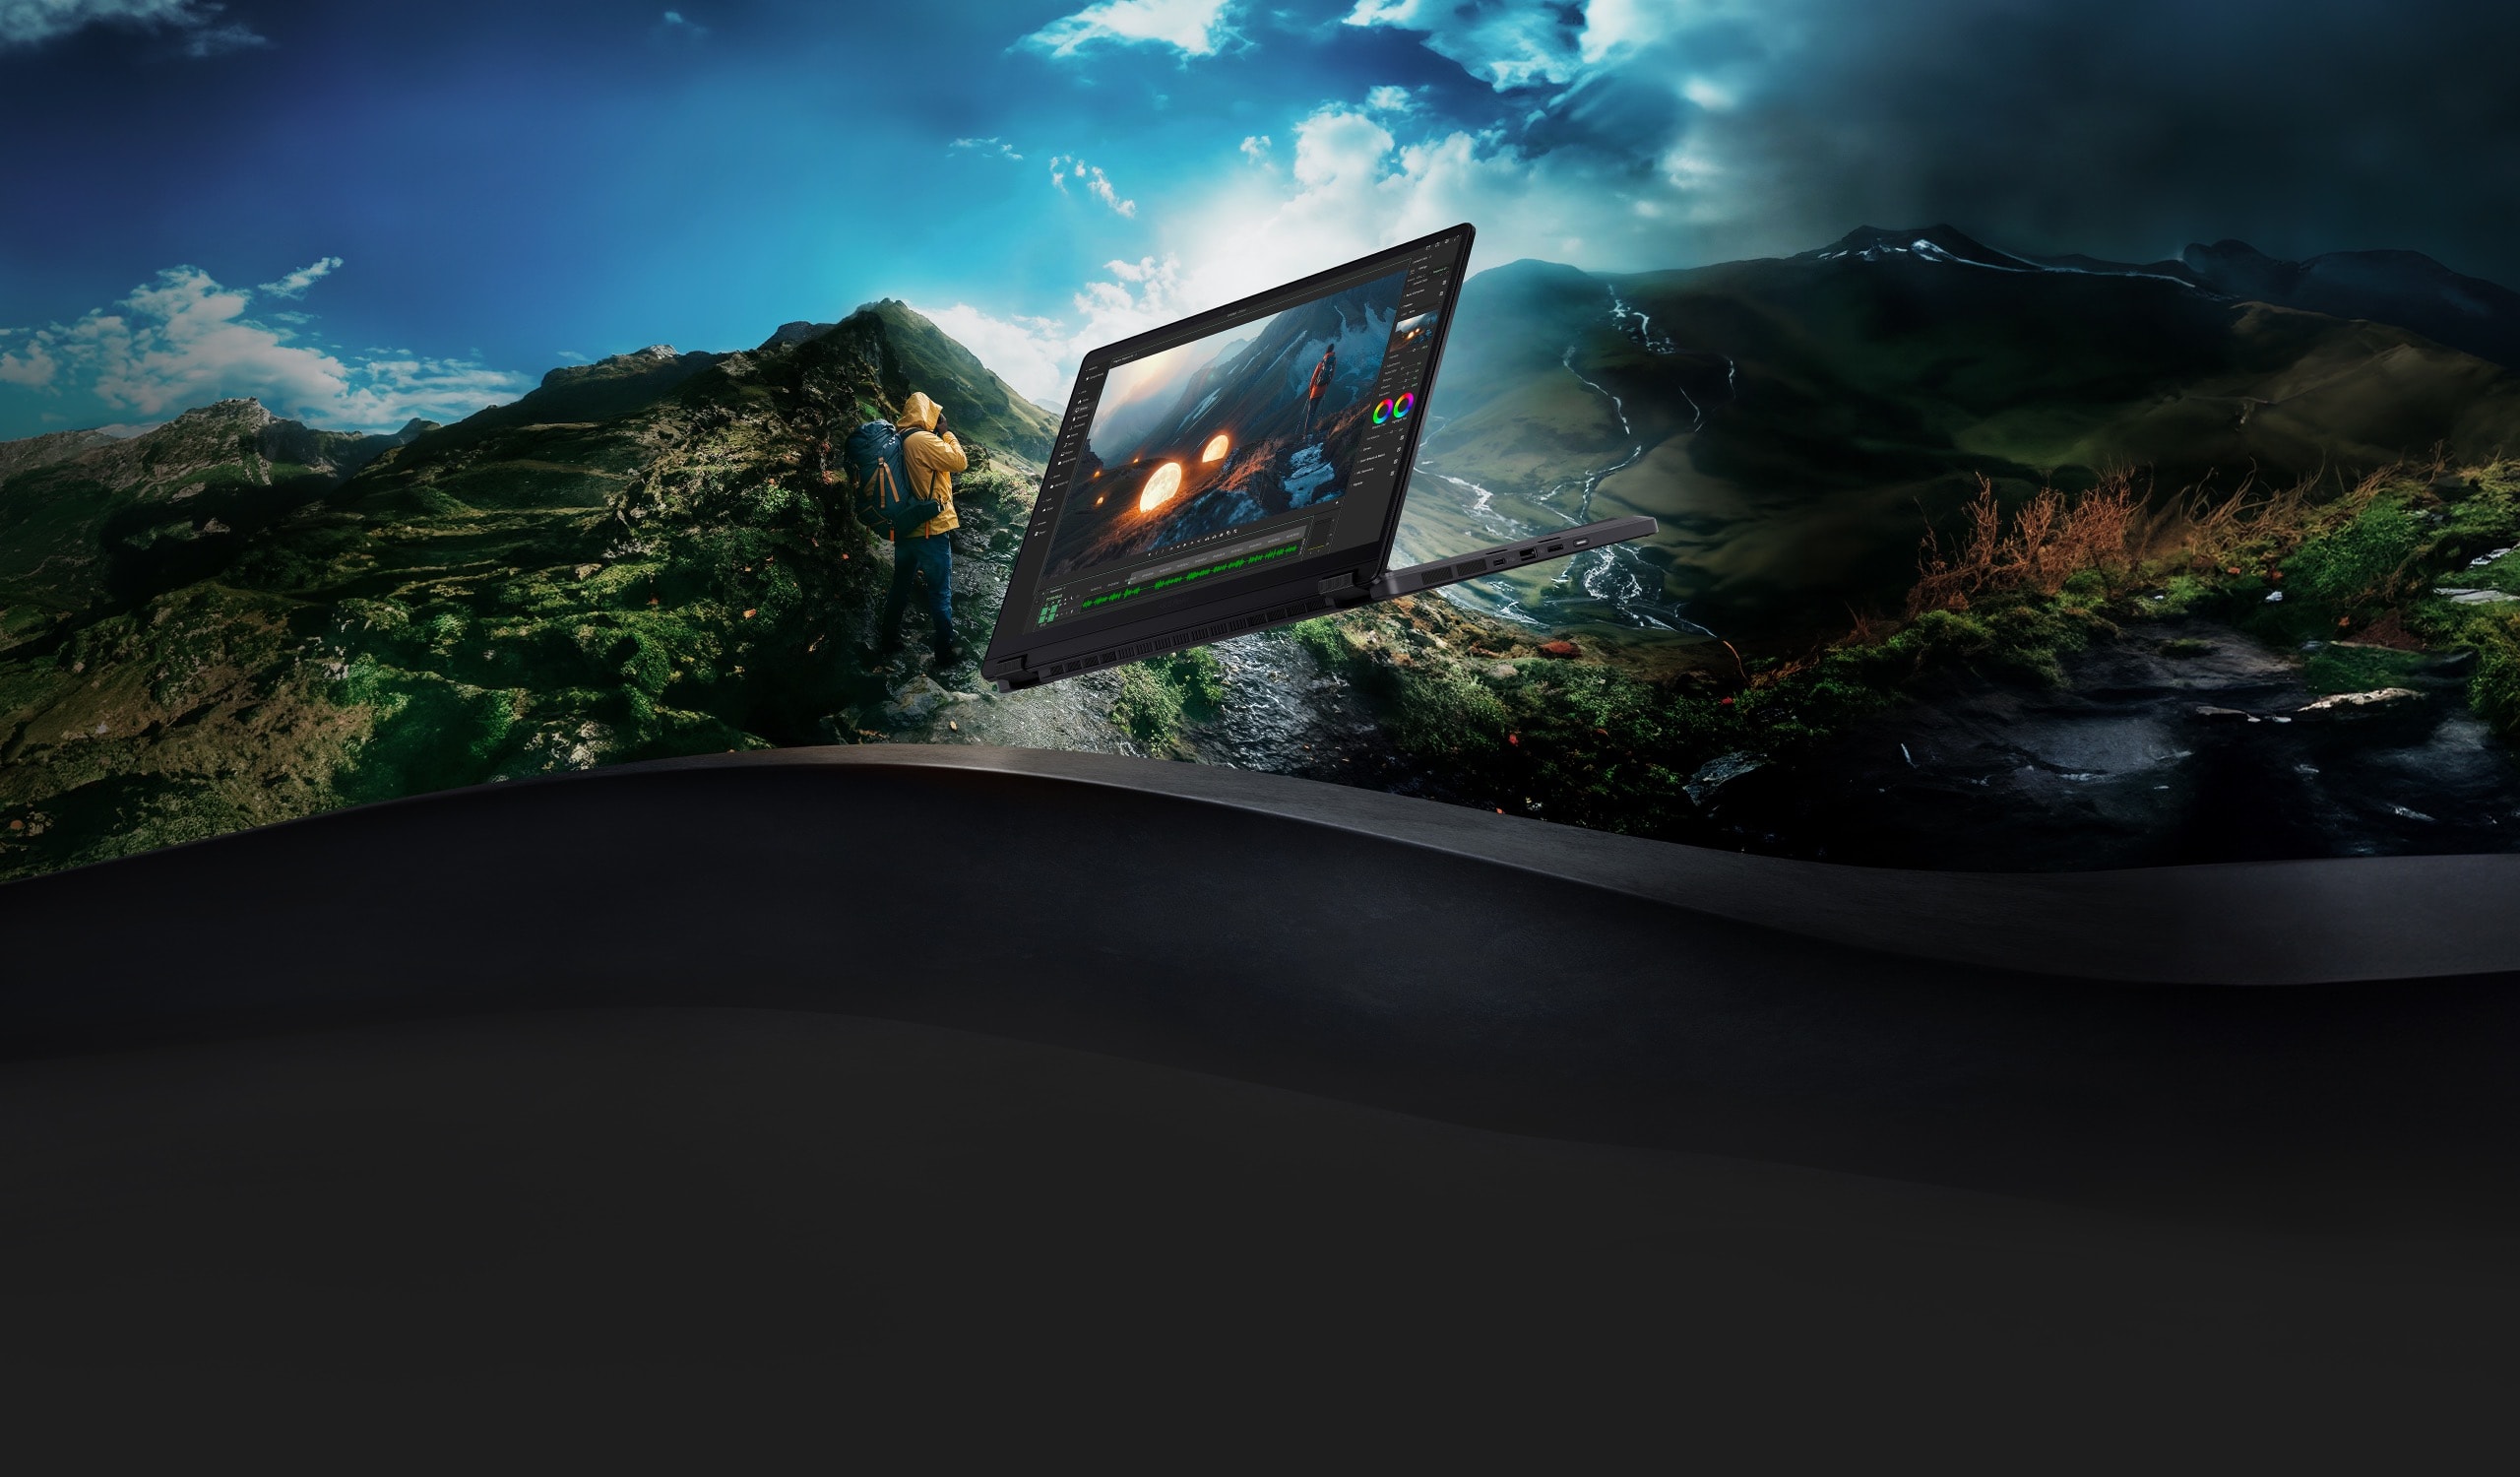 Ноутбук ProArt PX13 в стендовом режиме парит на фоне изображения с человеком в желтом плаще, шагающим сквозь горную долину.